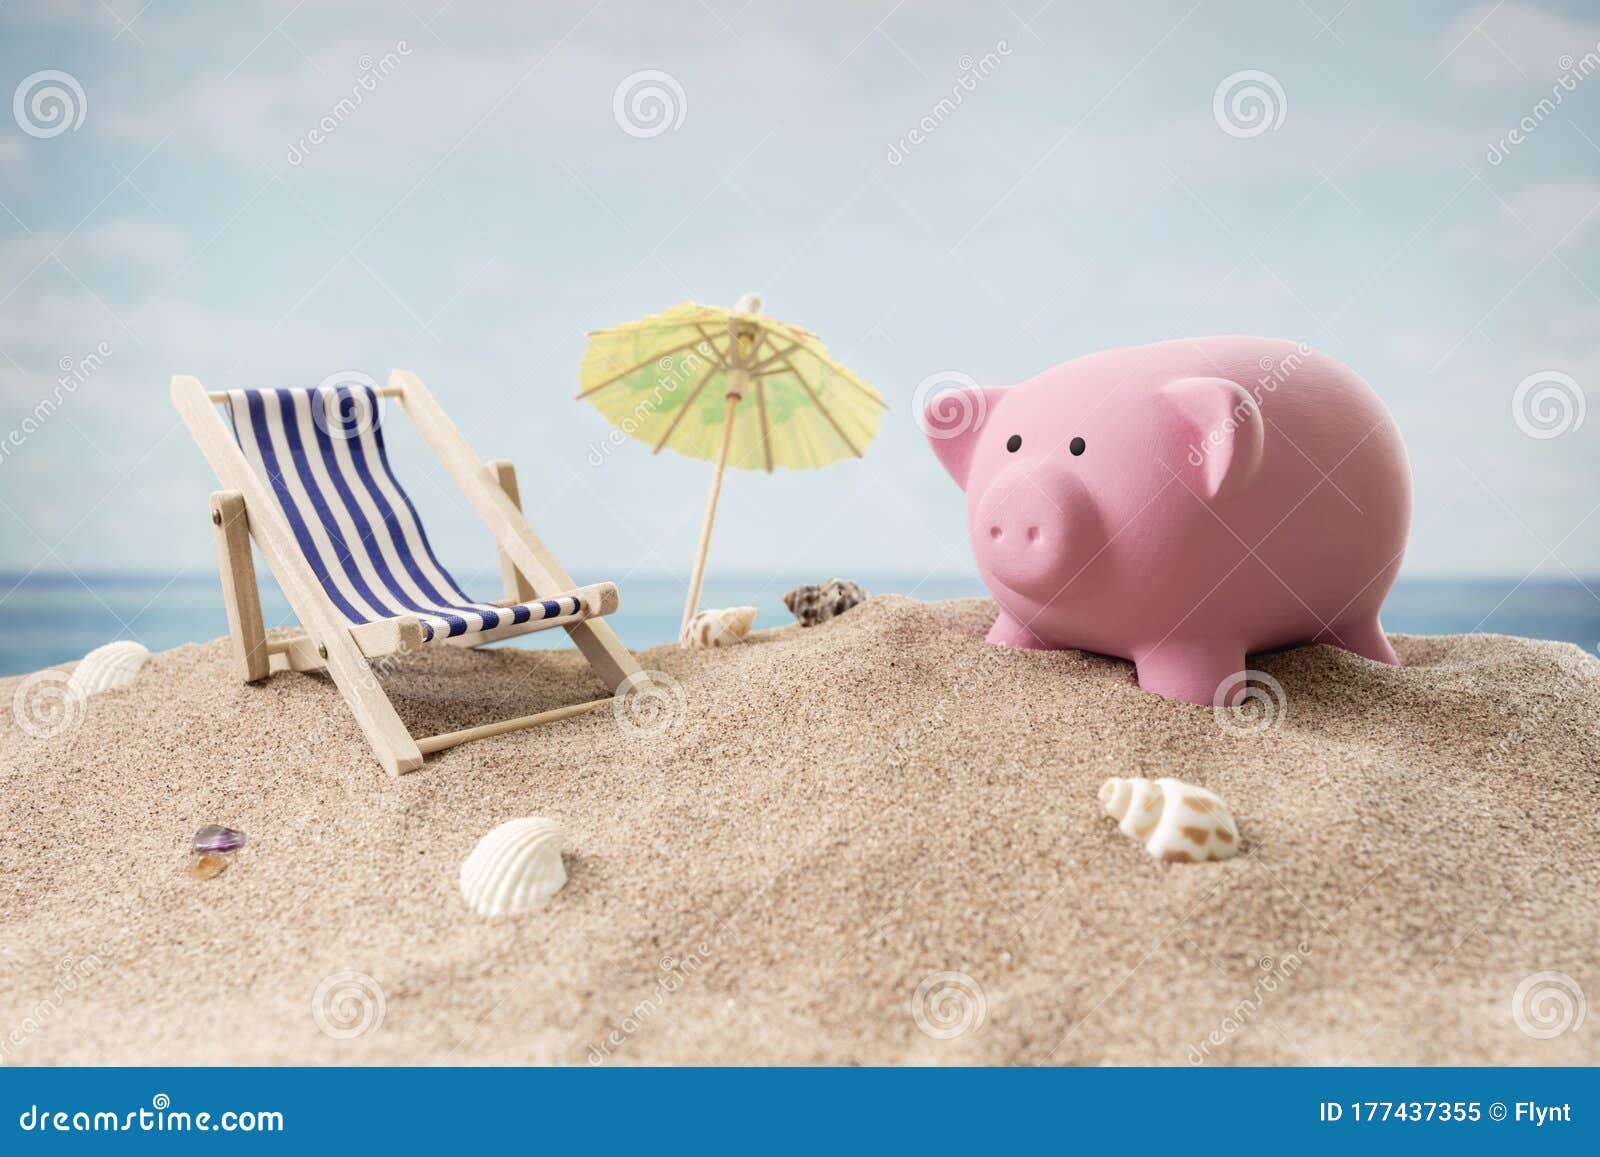 Salvadanaio Per Vacanze in Spiaggia: Finanza E Viaggi Immagine